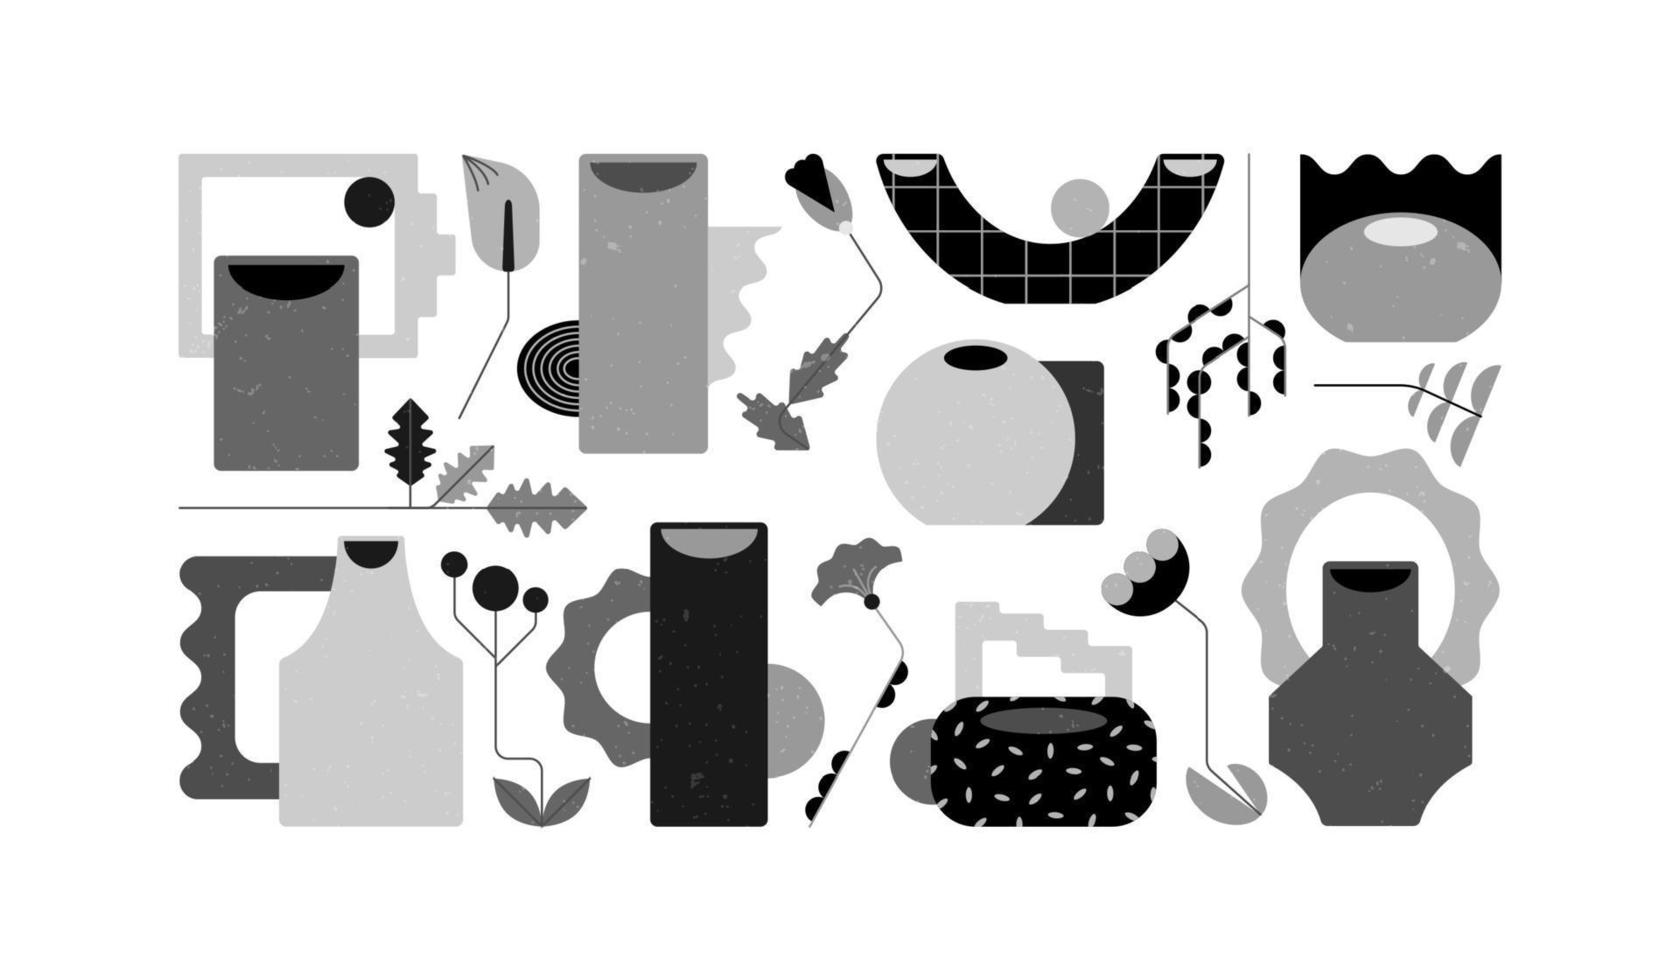 keramische vazen in zwart en wit met geometrische kleuren. moderne vectorkeramiek. organische vormen van aardewerk. abstracte vorm van gebruiksvoorwerpen. geïsoleerde elementen op witte achtergrond vector